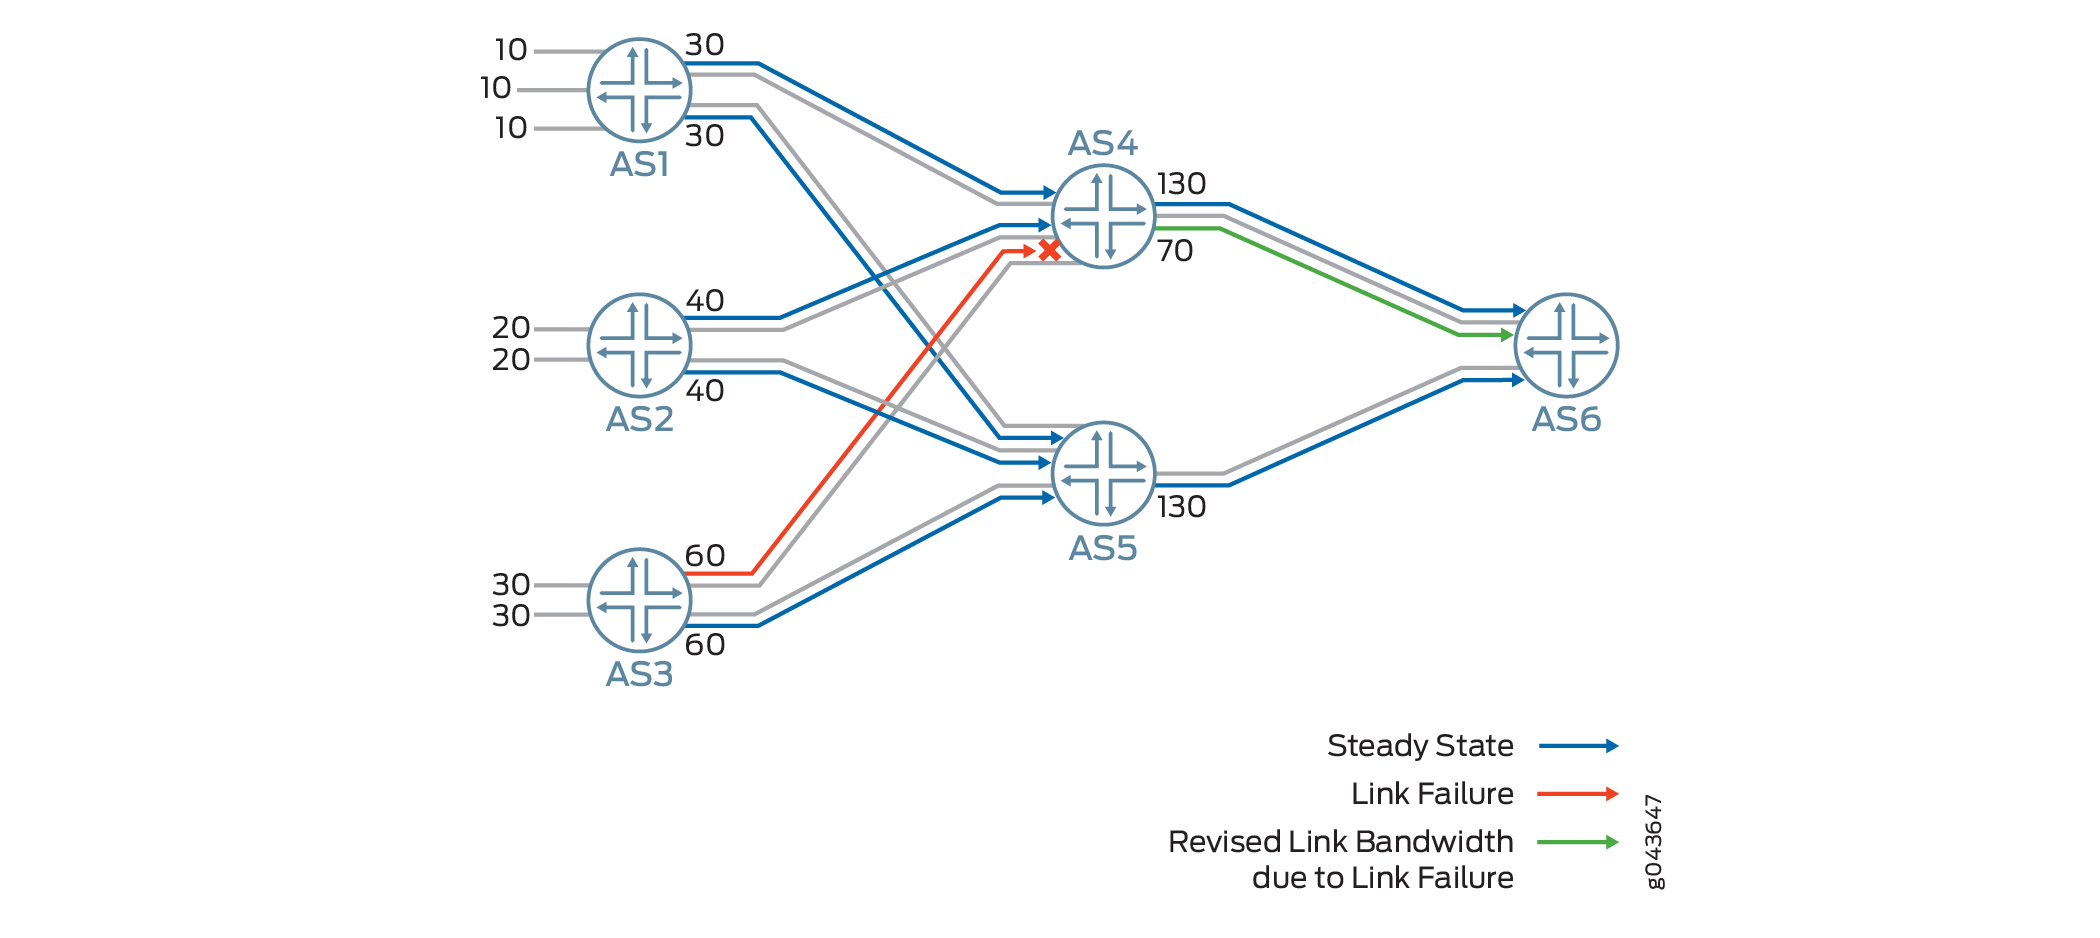 負荷分散のための外部 BGP リンクへの集約帯域幅のアドバタイズ